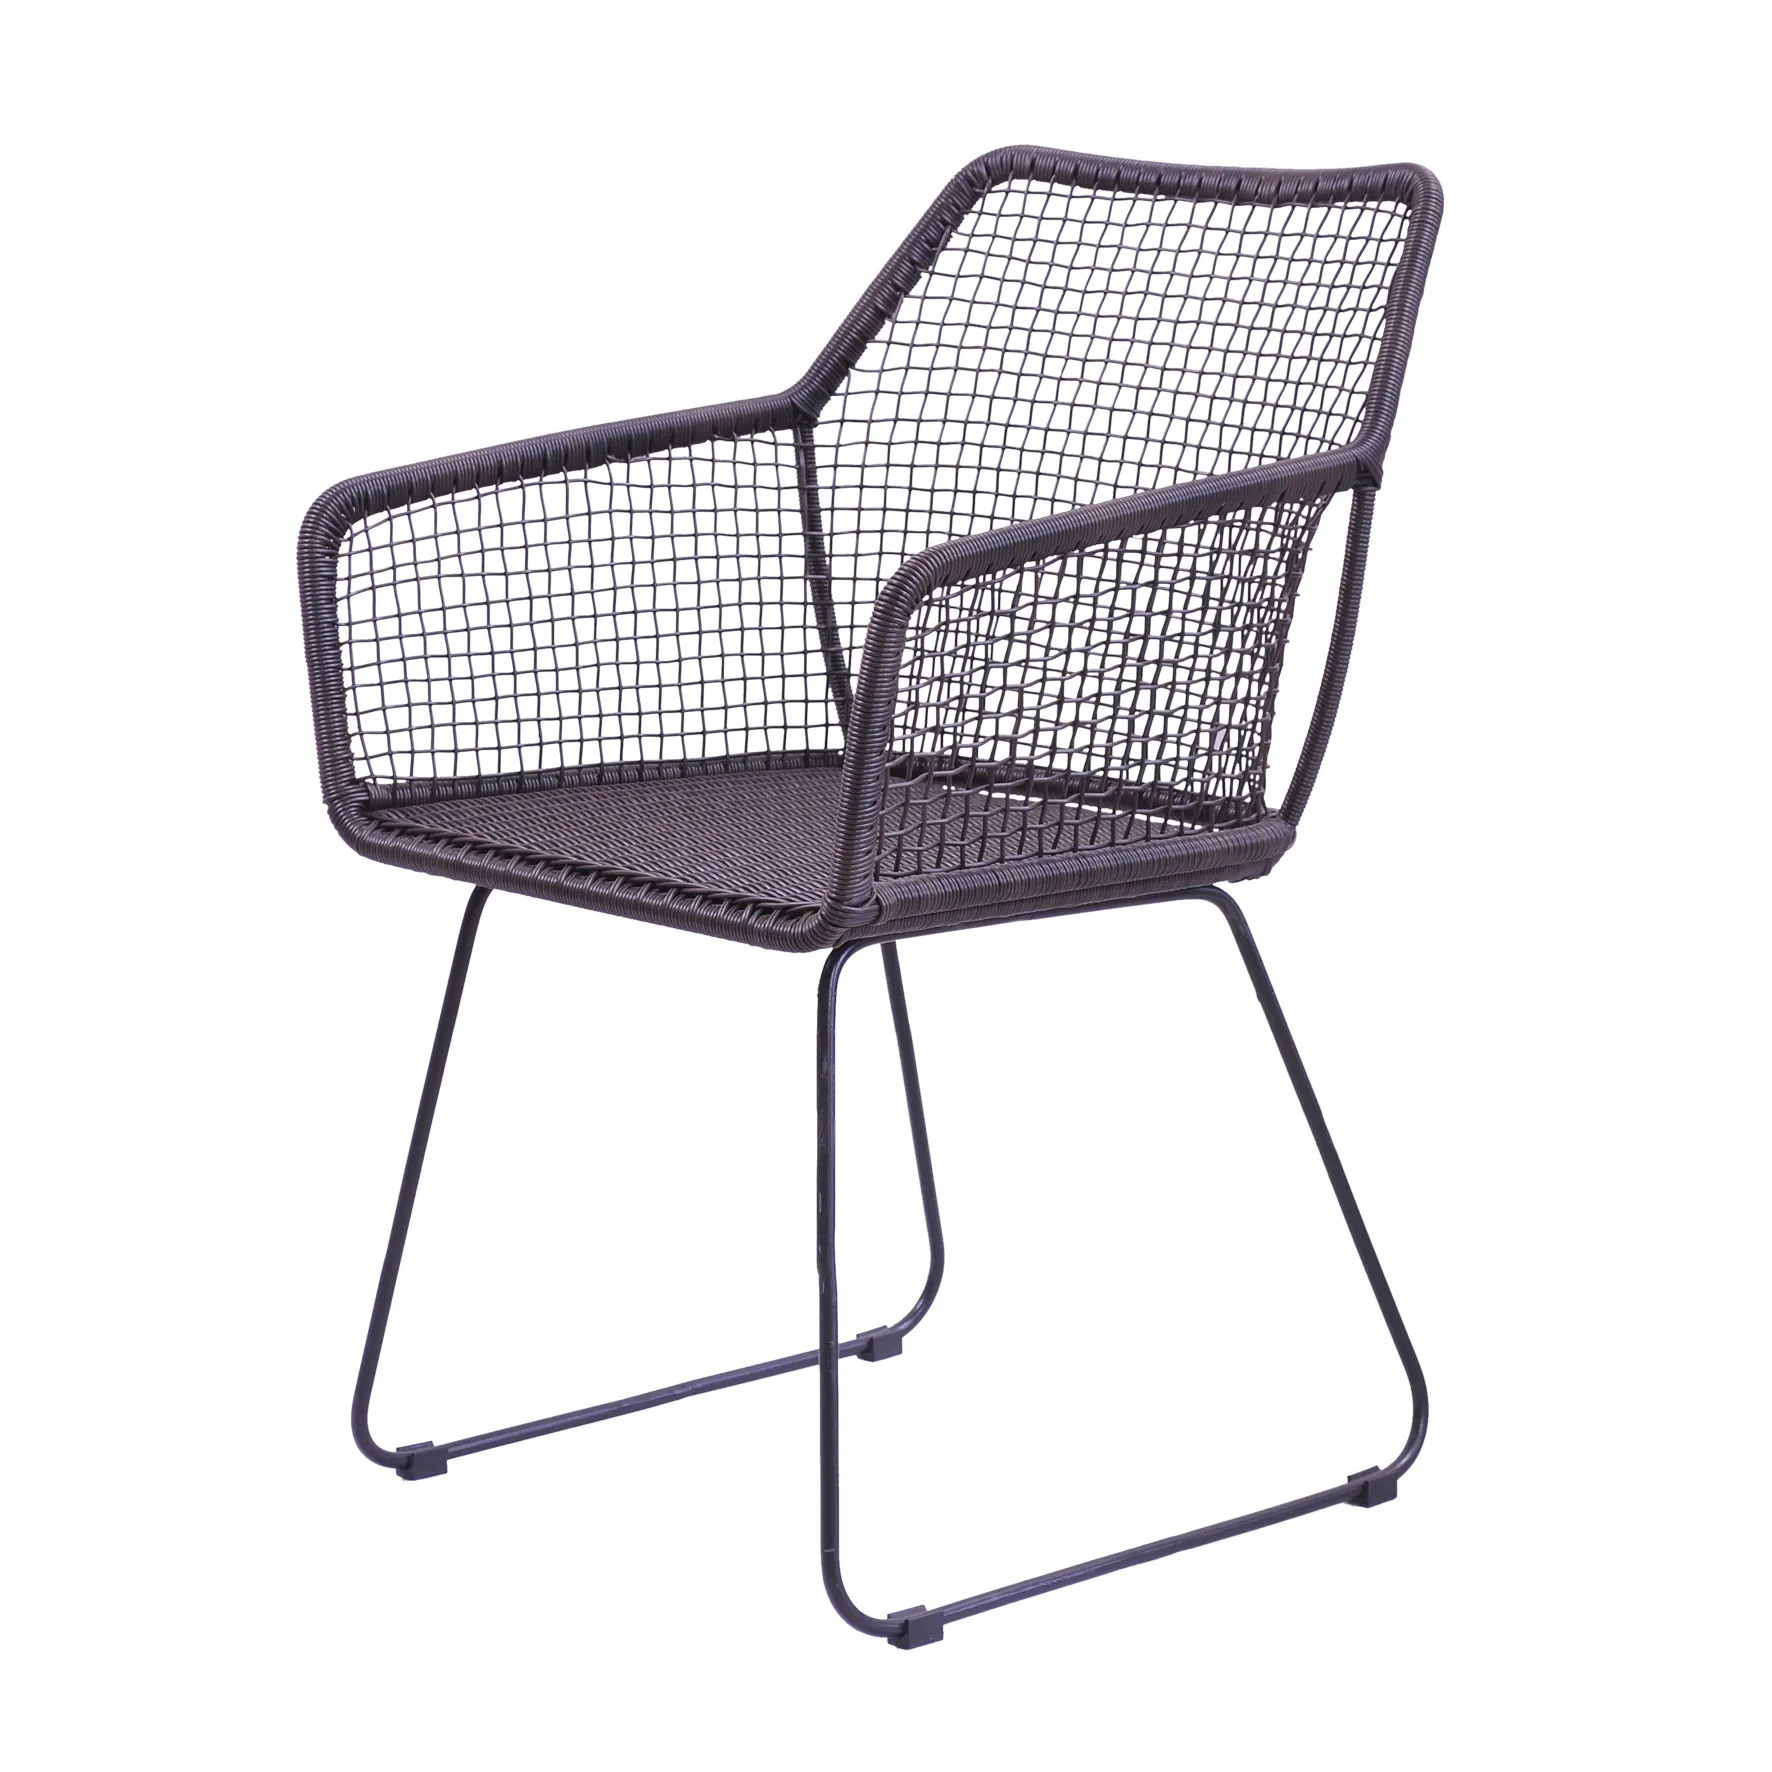 素朴でスタイリッシュな椅子籐製合成シンプルでエレガントでモダンなデザインインドネシア製